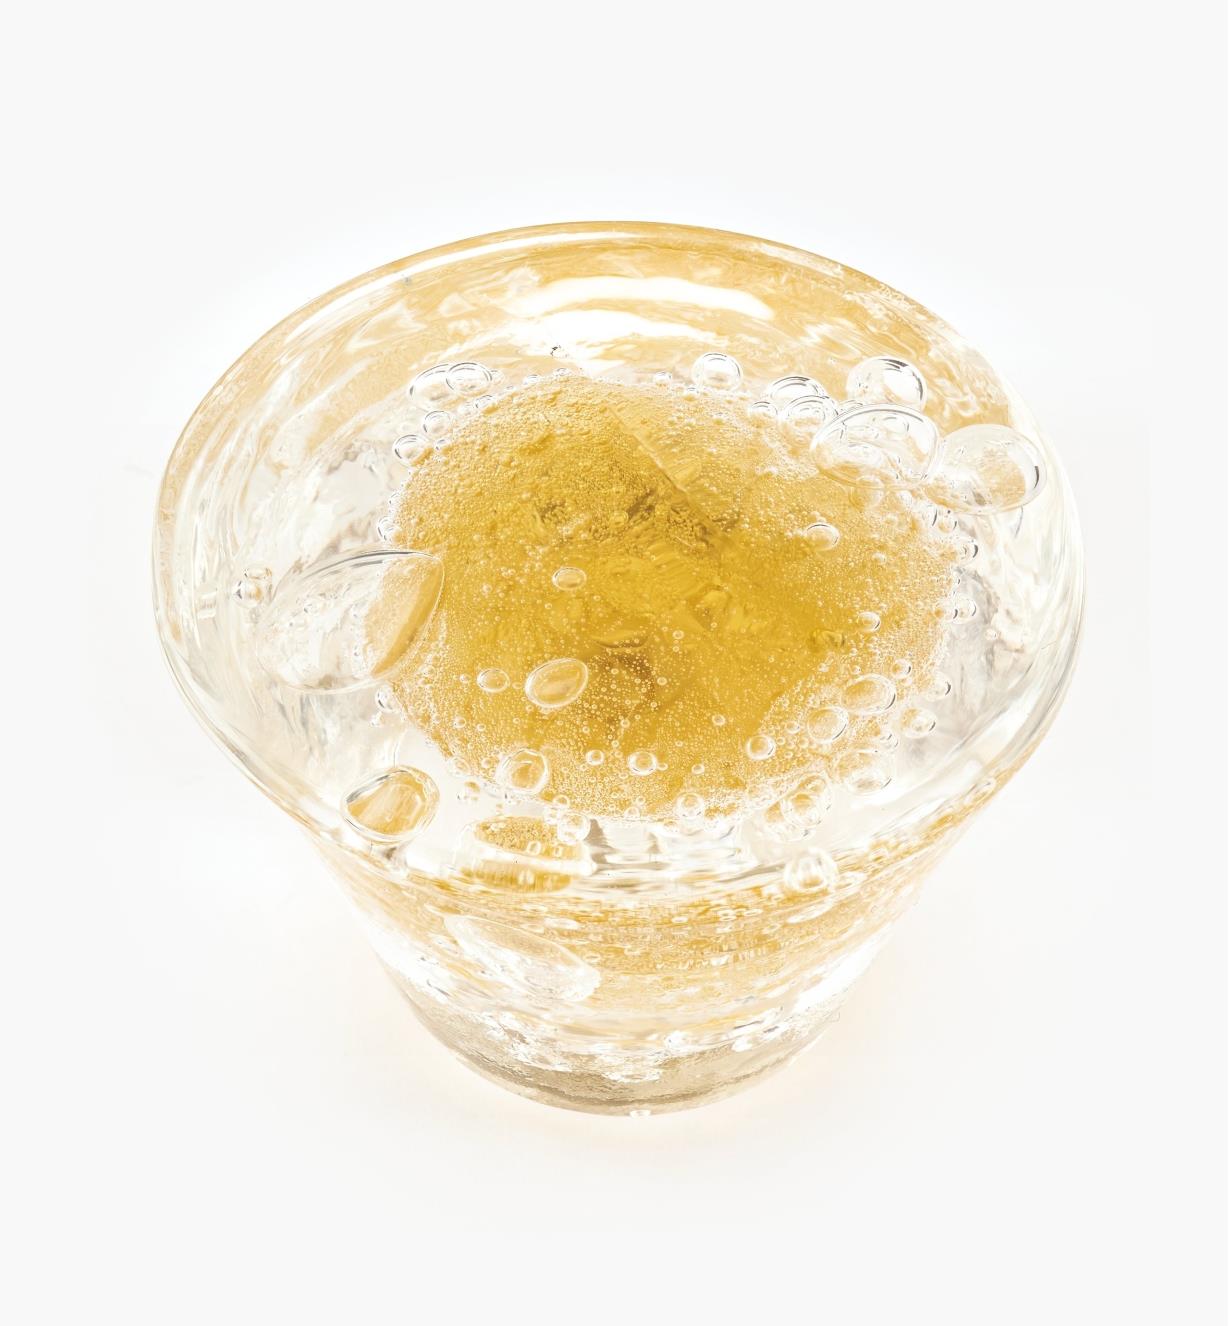 00A7715 - Bouton en verre de Murano Laguna, or, 1 po x 1 7/16 po